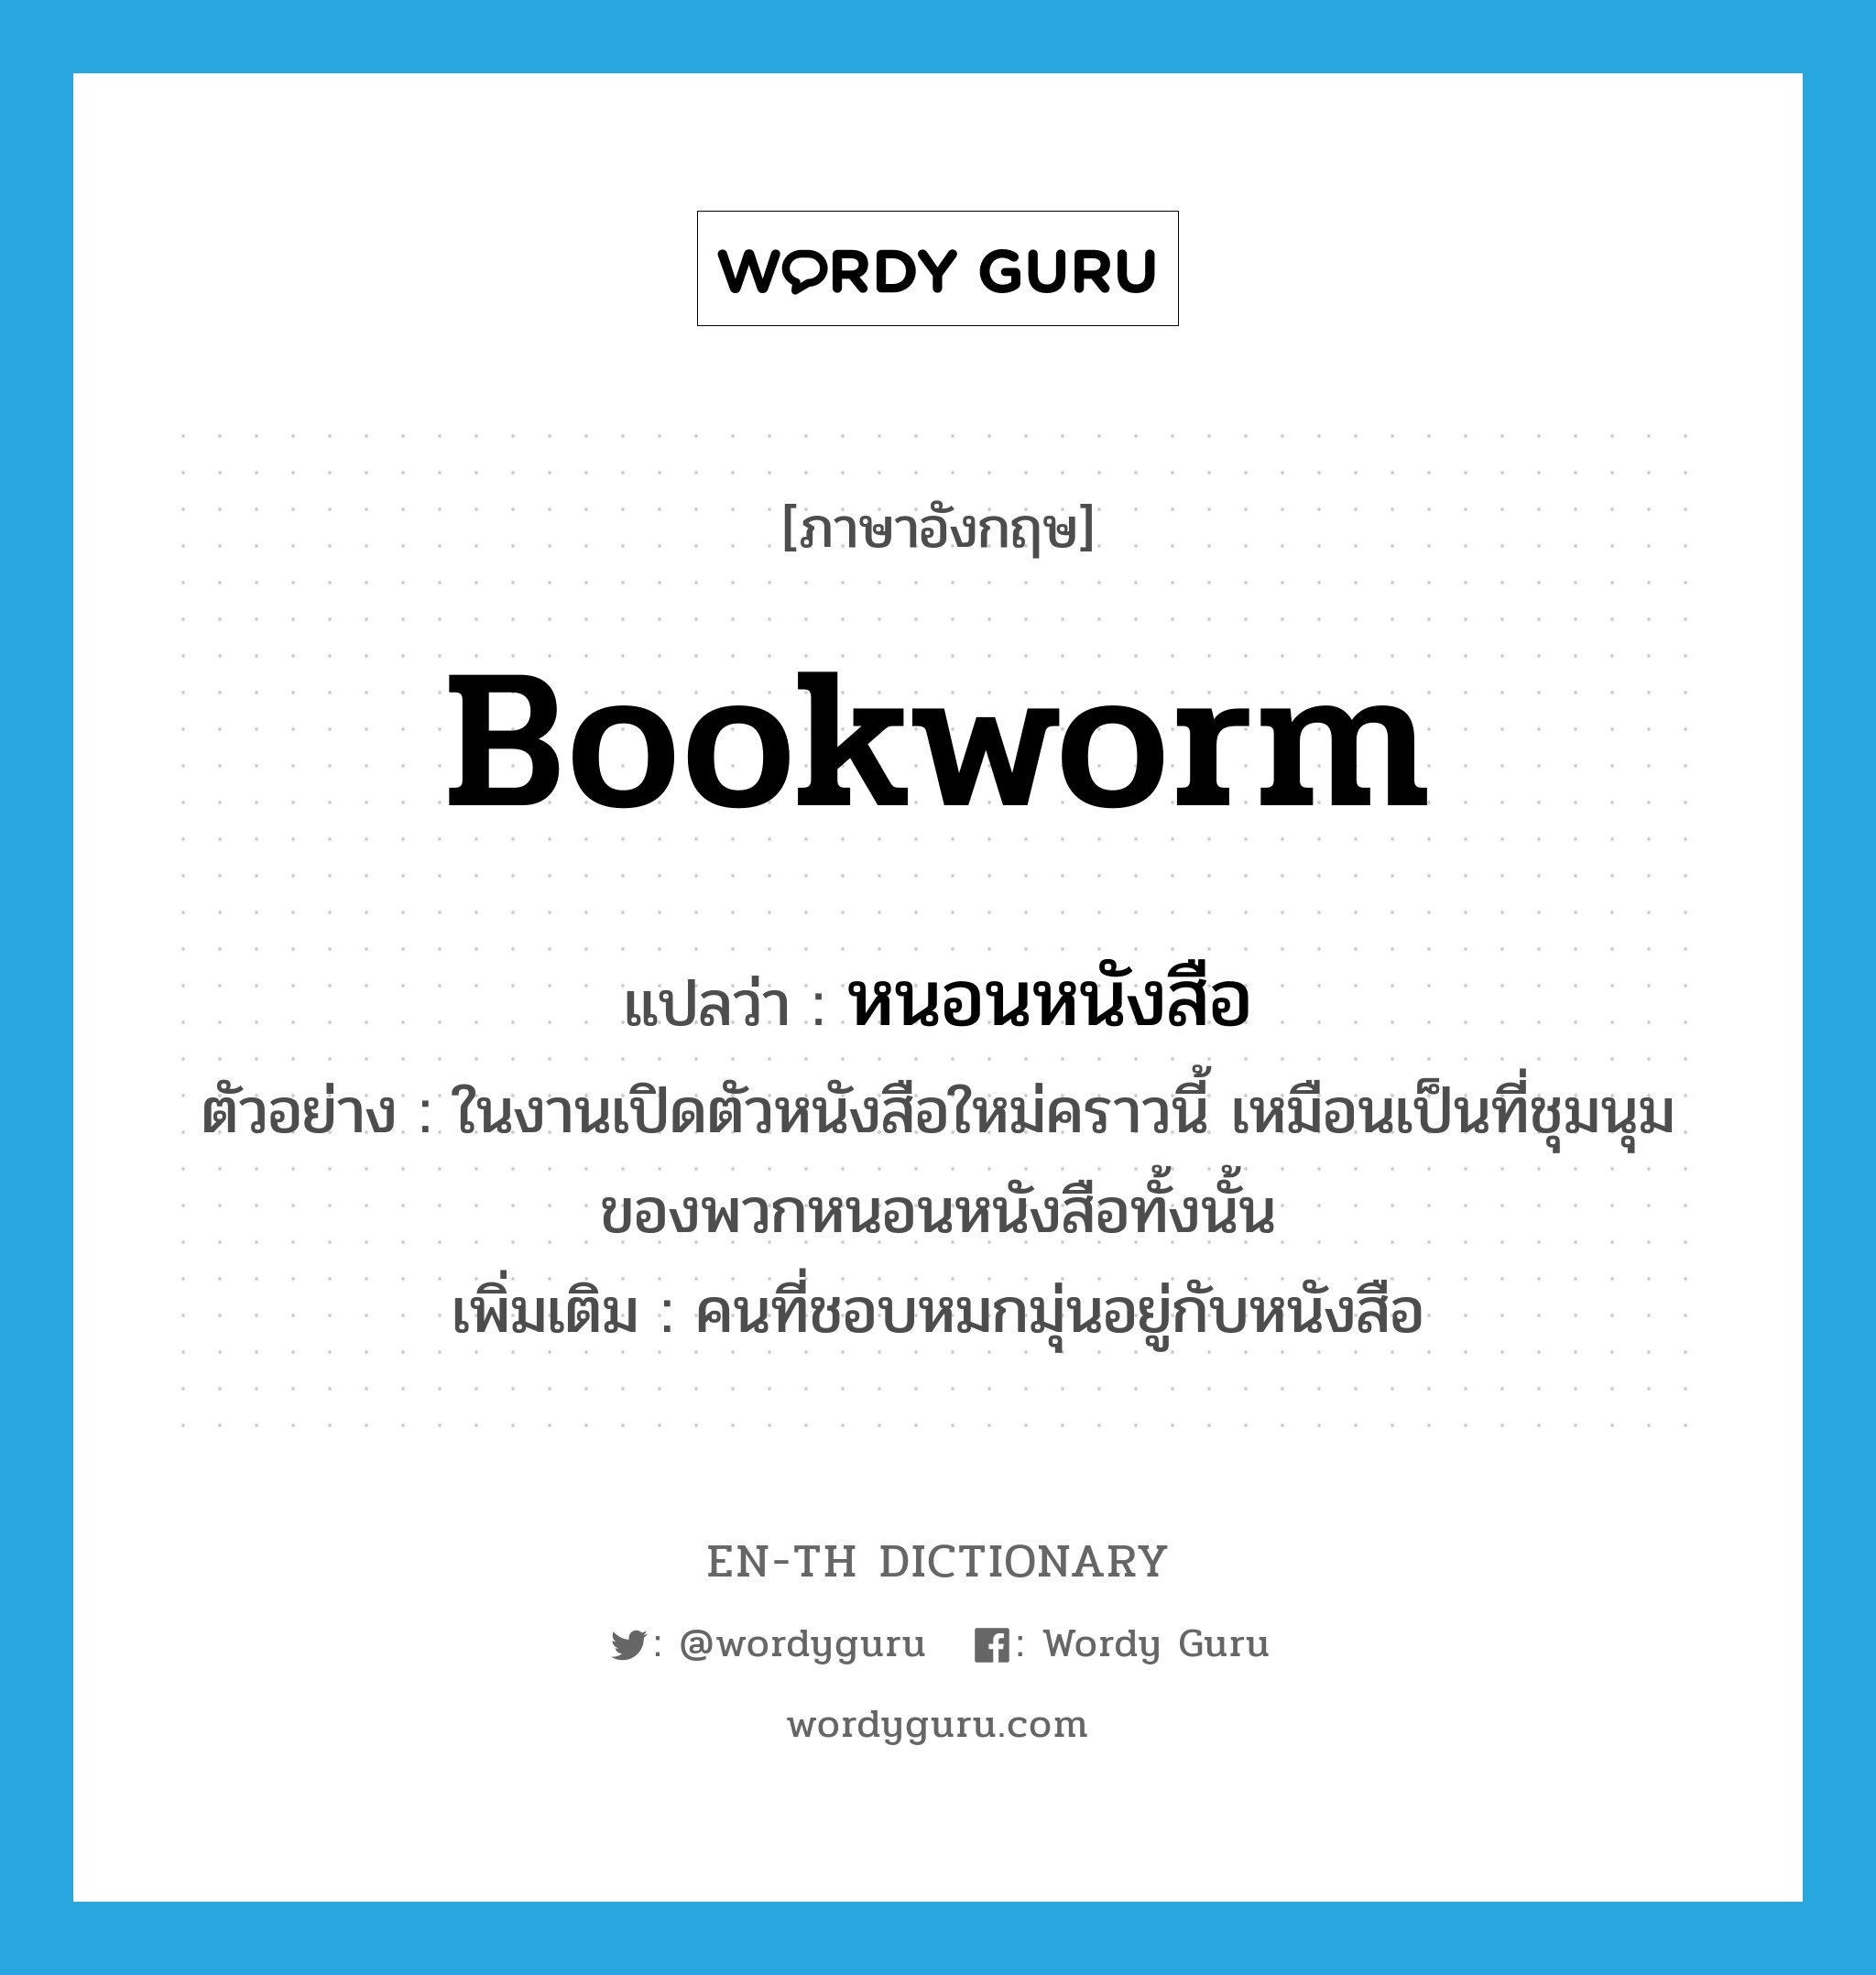 bookworm แปลว่า?, คำศัพท์ภาษาอังกฤษ bookworm แปลว่า หนอนหนังสือ ประเภท N ตัวอย่าง ในงานเปิดตัวหนังสือใหม่คราวนี้ เหมือนเป็นที่ชุมนุมของพวกหนอนหนังสือทั้งนั้น เพิ่มเติม คนที่ชอบหมกมุ่นอยู่กับหนังสือ หมวด N